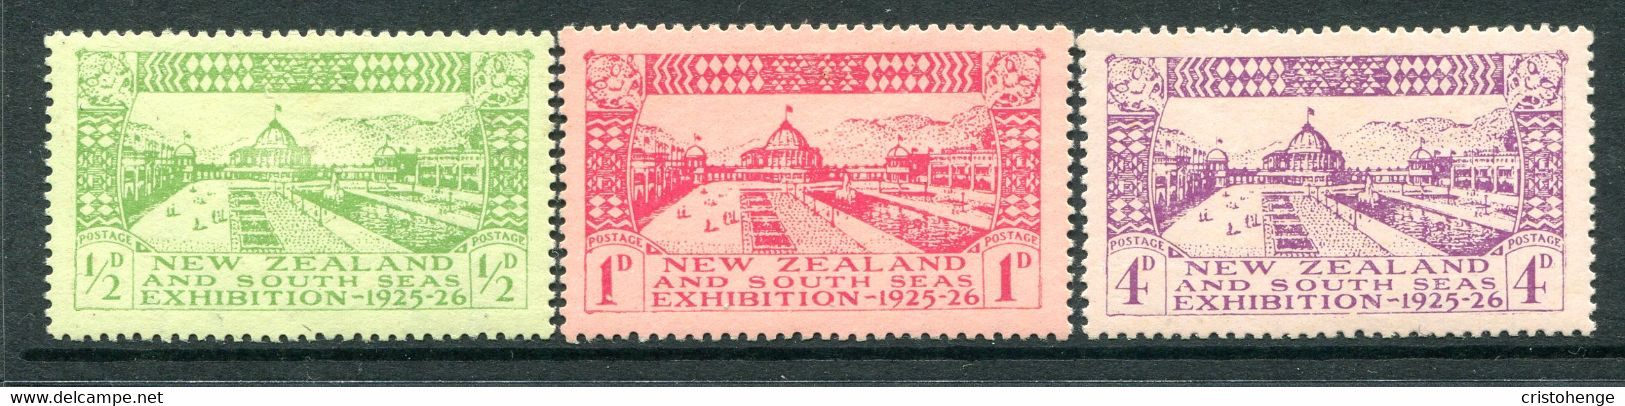 New Zealand 1925 Dunedin Exhibition Set HM (SG 463-465) - Nuovi